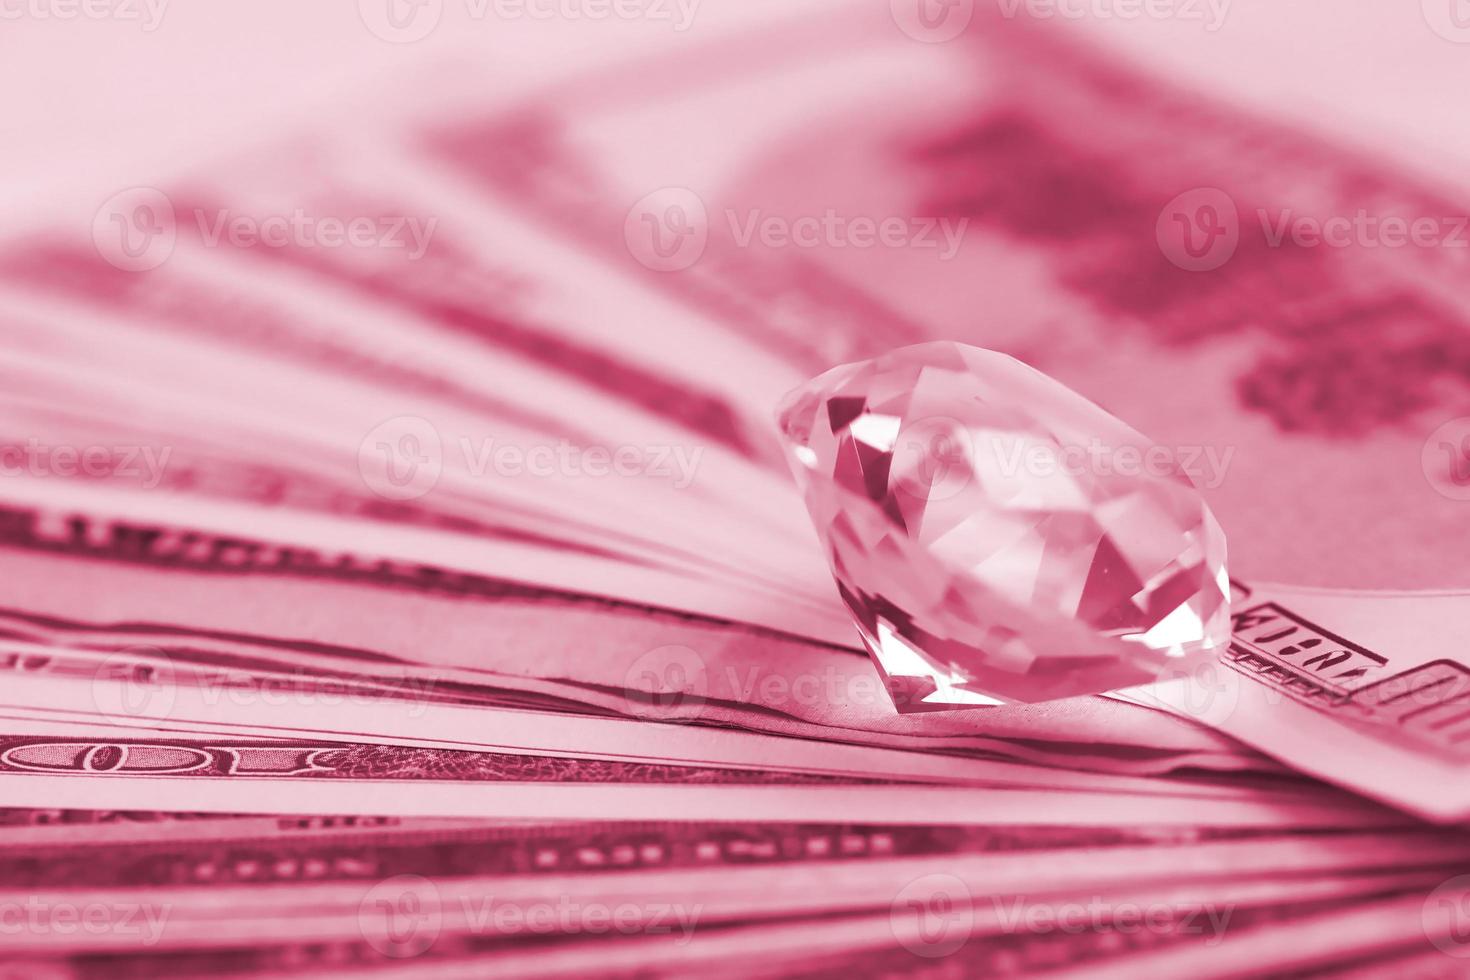 nosotros billetes de dinero con un gran diamante de cerca. gran cantidad de dólares y una enorme gema transparente sobre la mesa. imagen de negocios y joyería tonificada en viva magenta, color del año 2023 foto